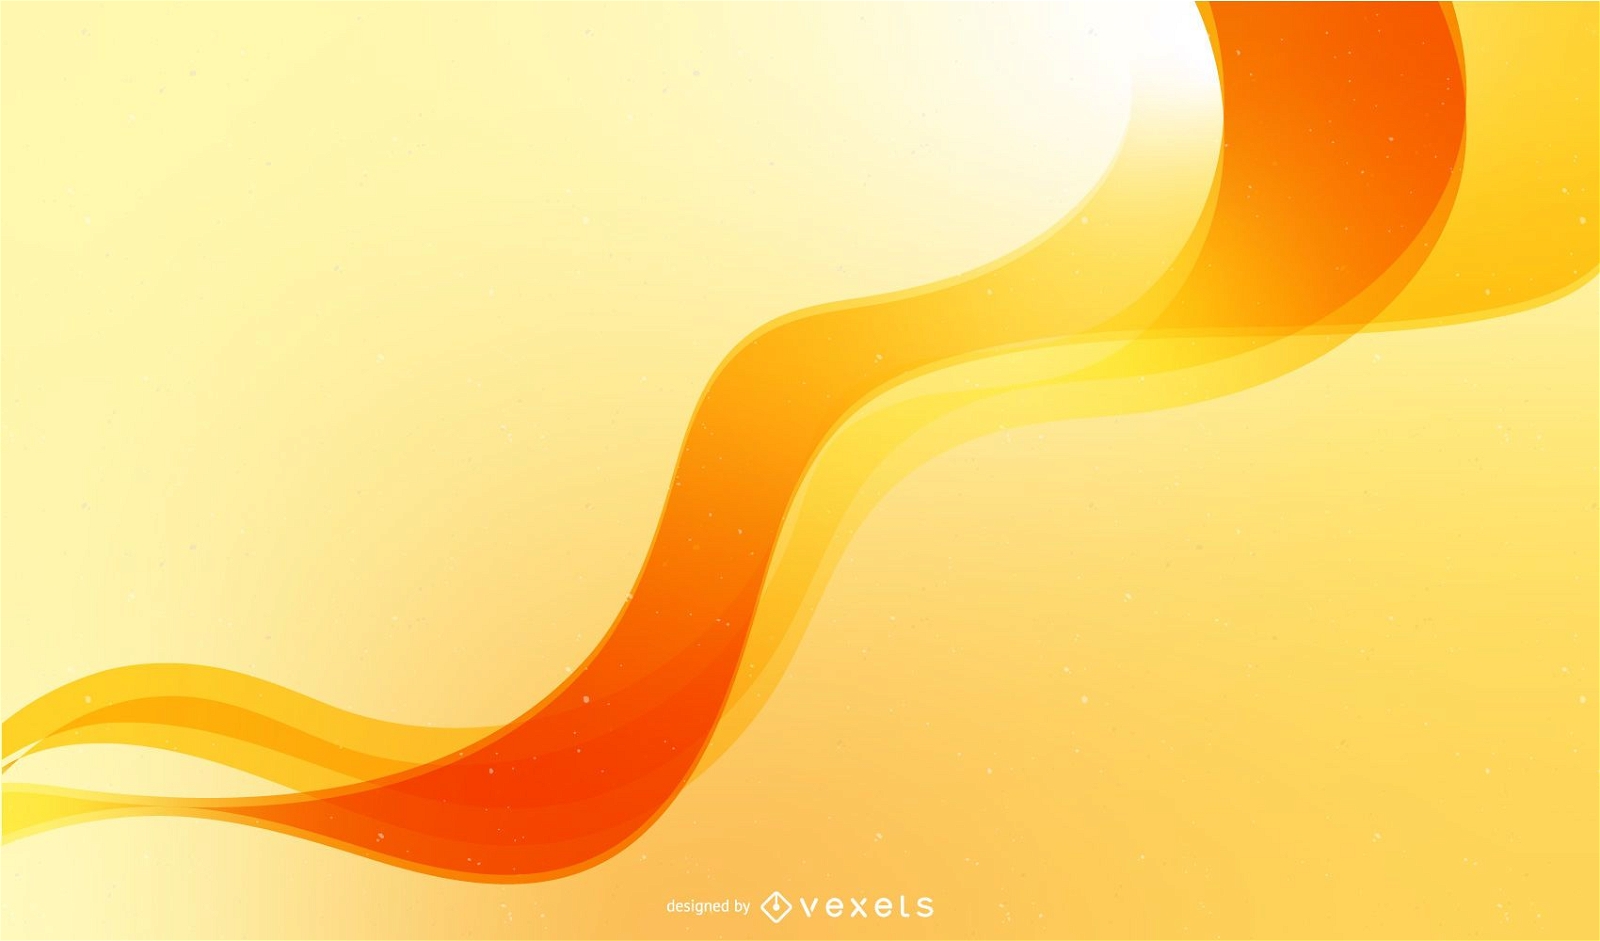 Desenho de cenário abstrato com onda laranja